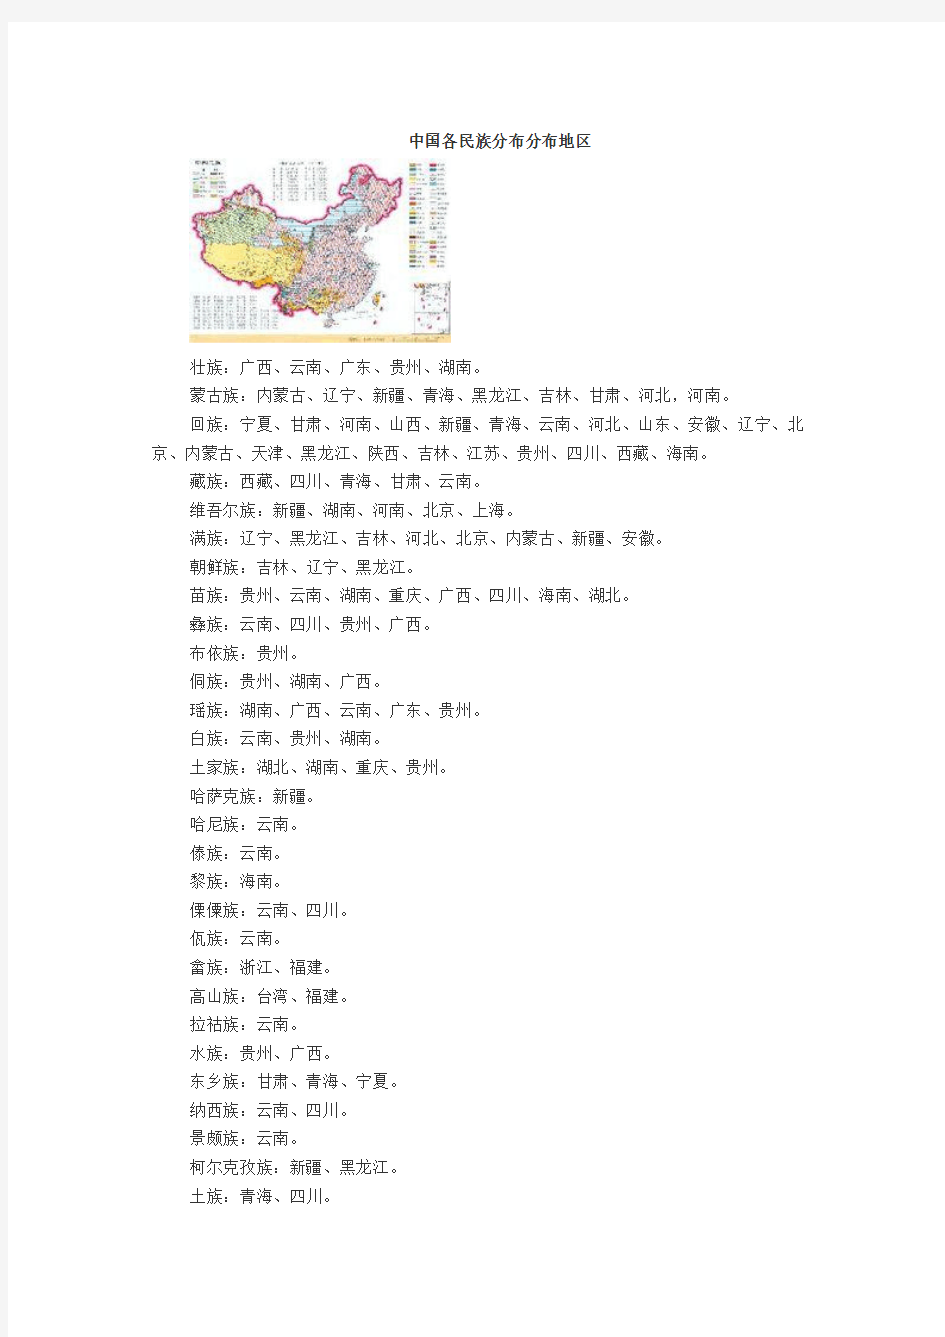 中国各民族分布分布地区